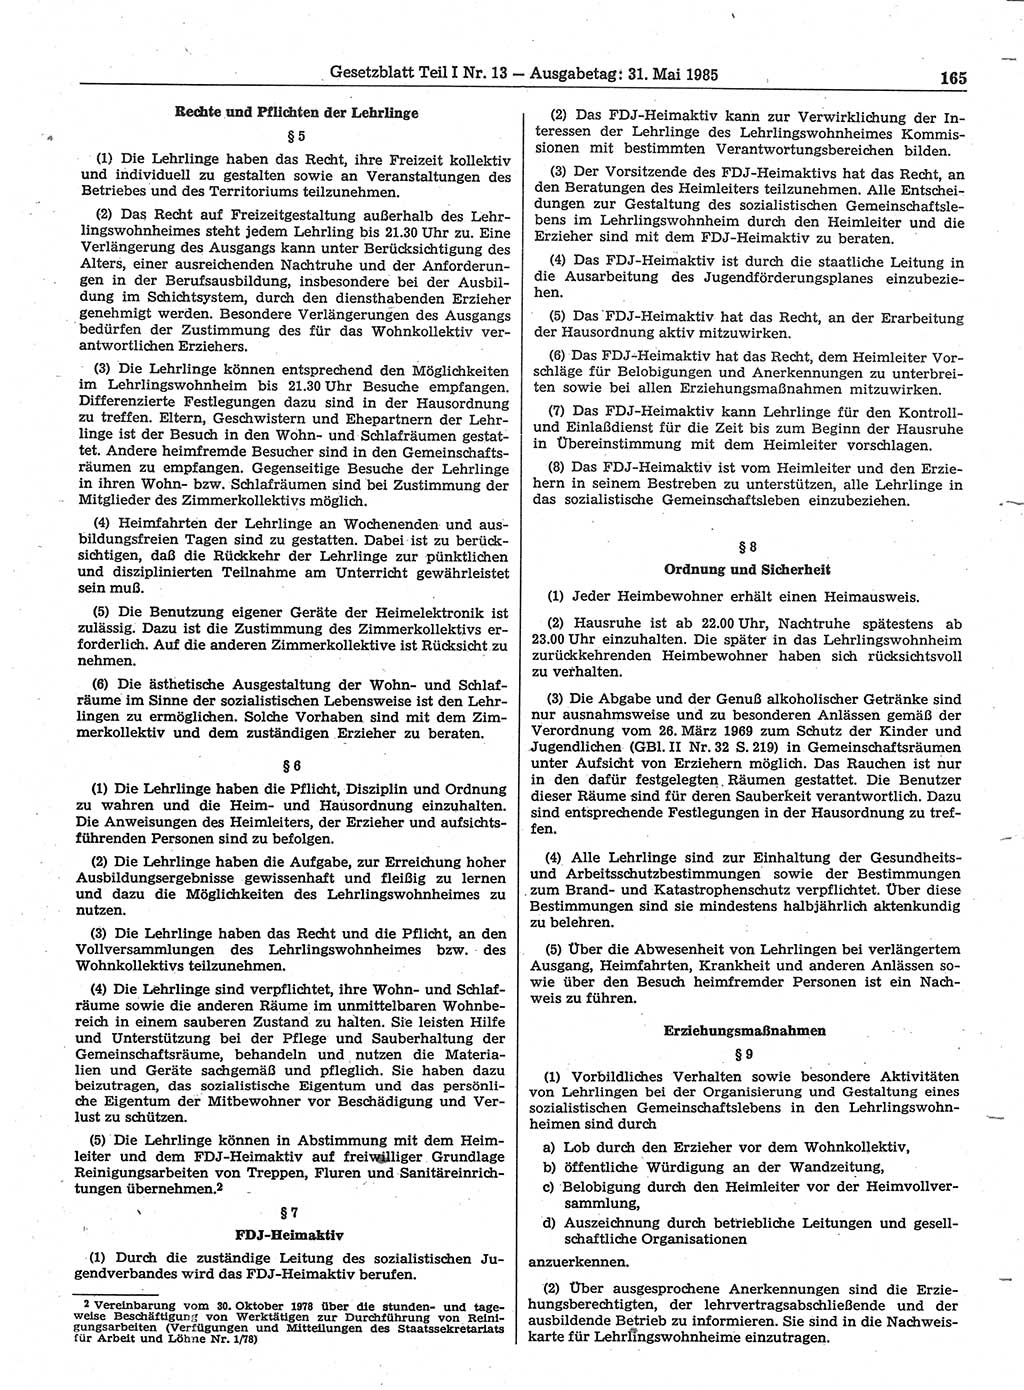 Gesetzblatt (GBl.) der Deutschen Demokratischen Republik (DDR) Teil Ⅰ 1985, Seite 165 (GBl. DDR Ⅰ 1985, S. 165)